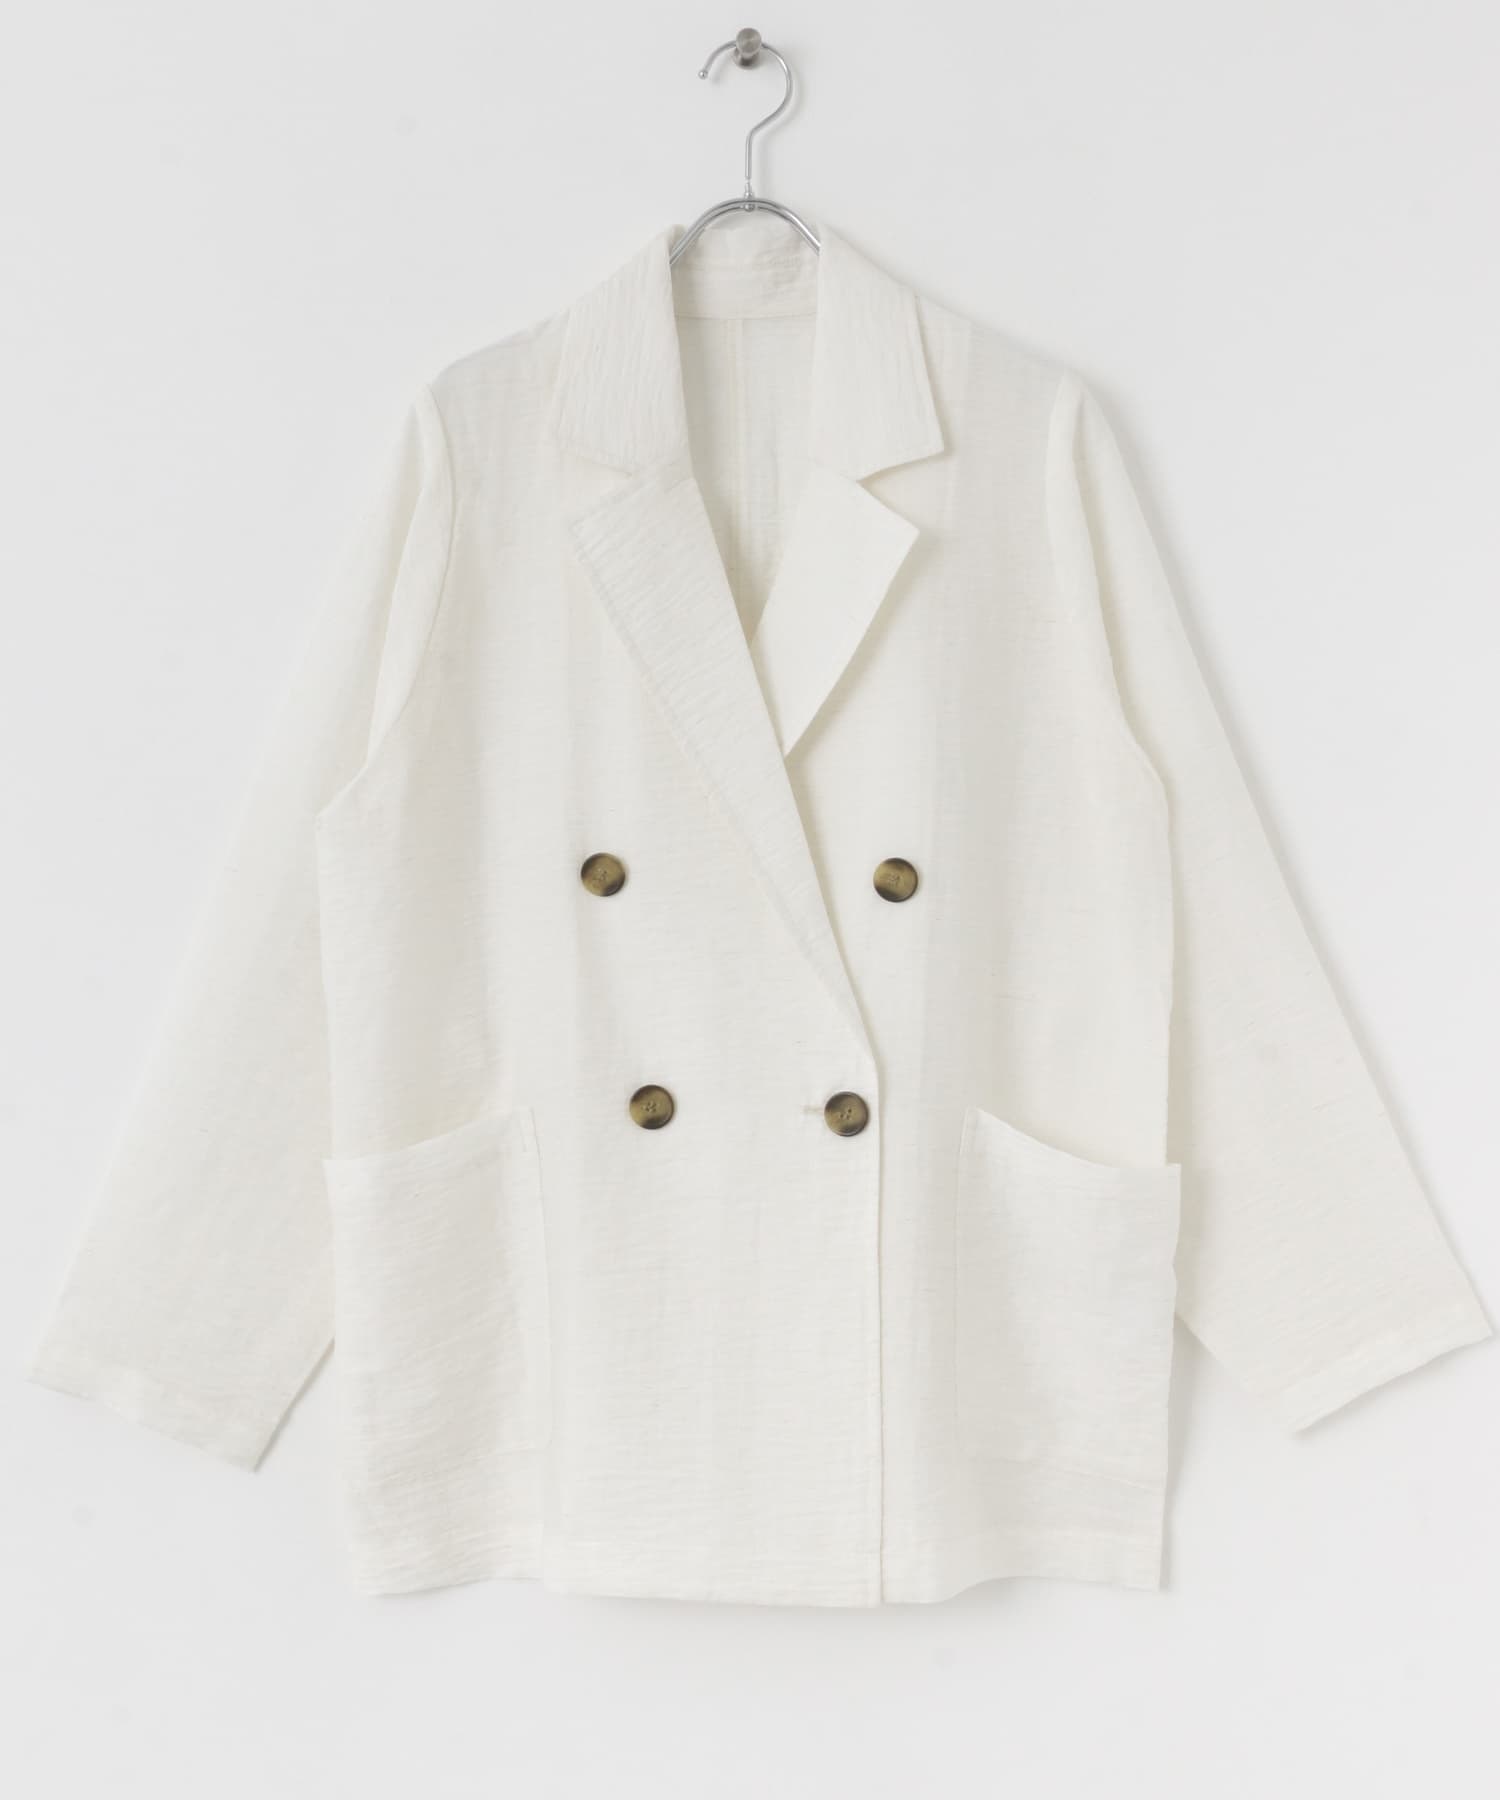 輕盈透膚襯衫式西裝外套(米色-FREE-OFF WHITE)